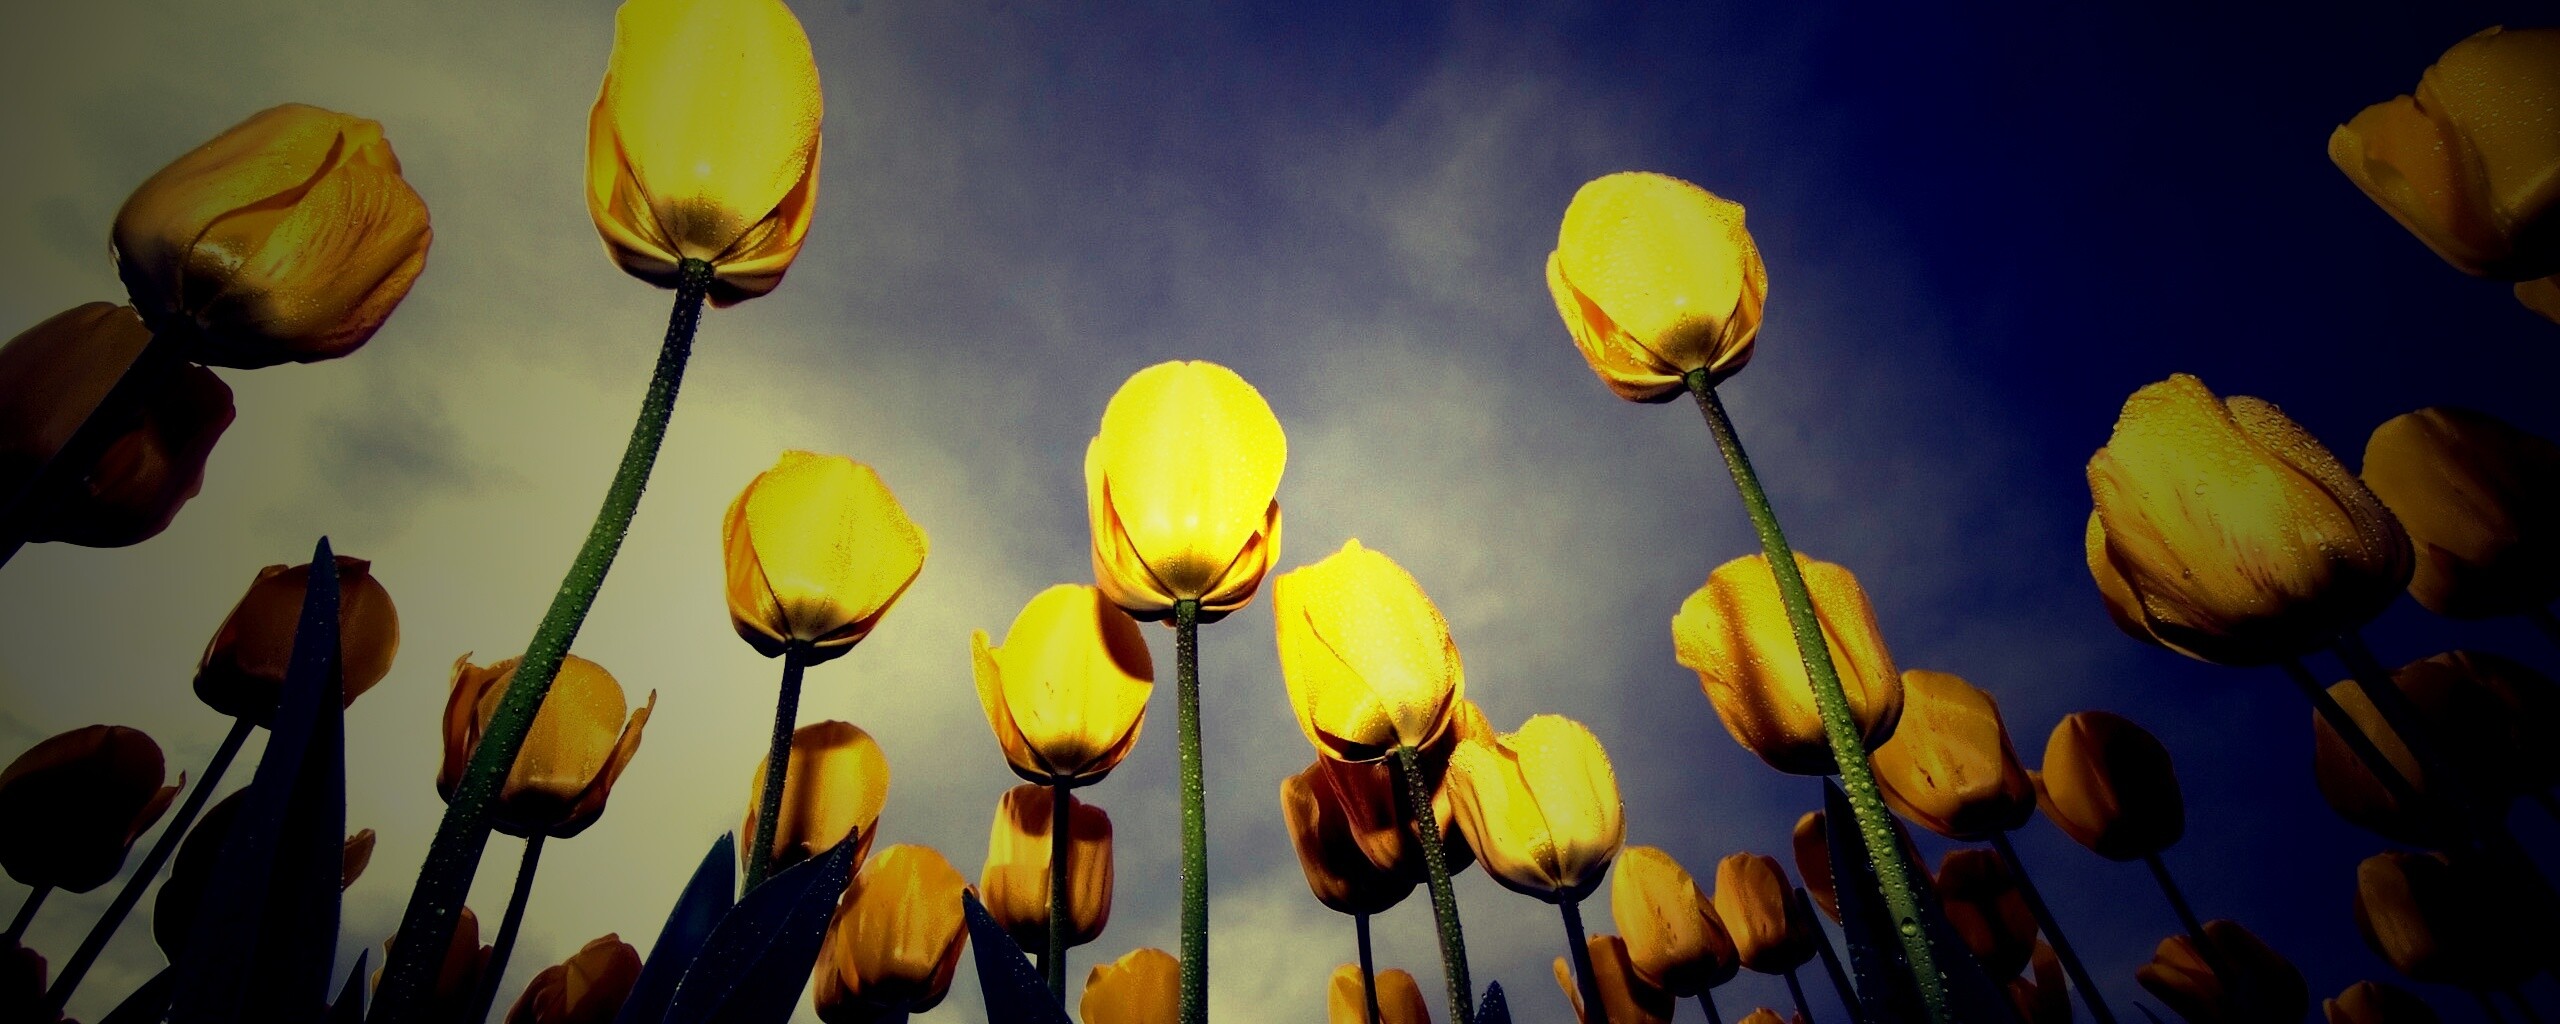 природа цветы тюльпаны желтые nature flowers tulips yellow без смс